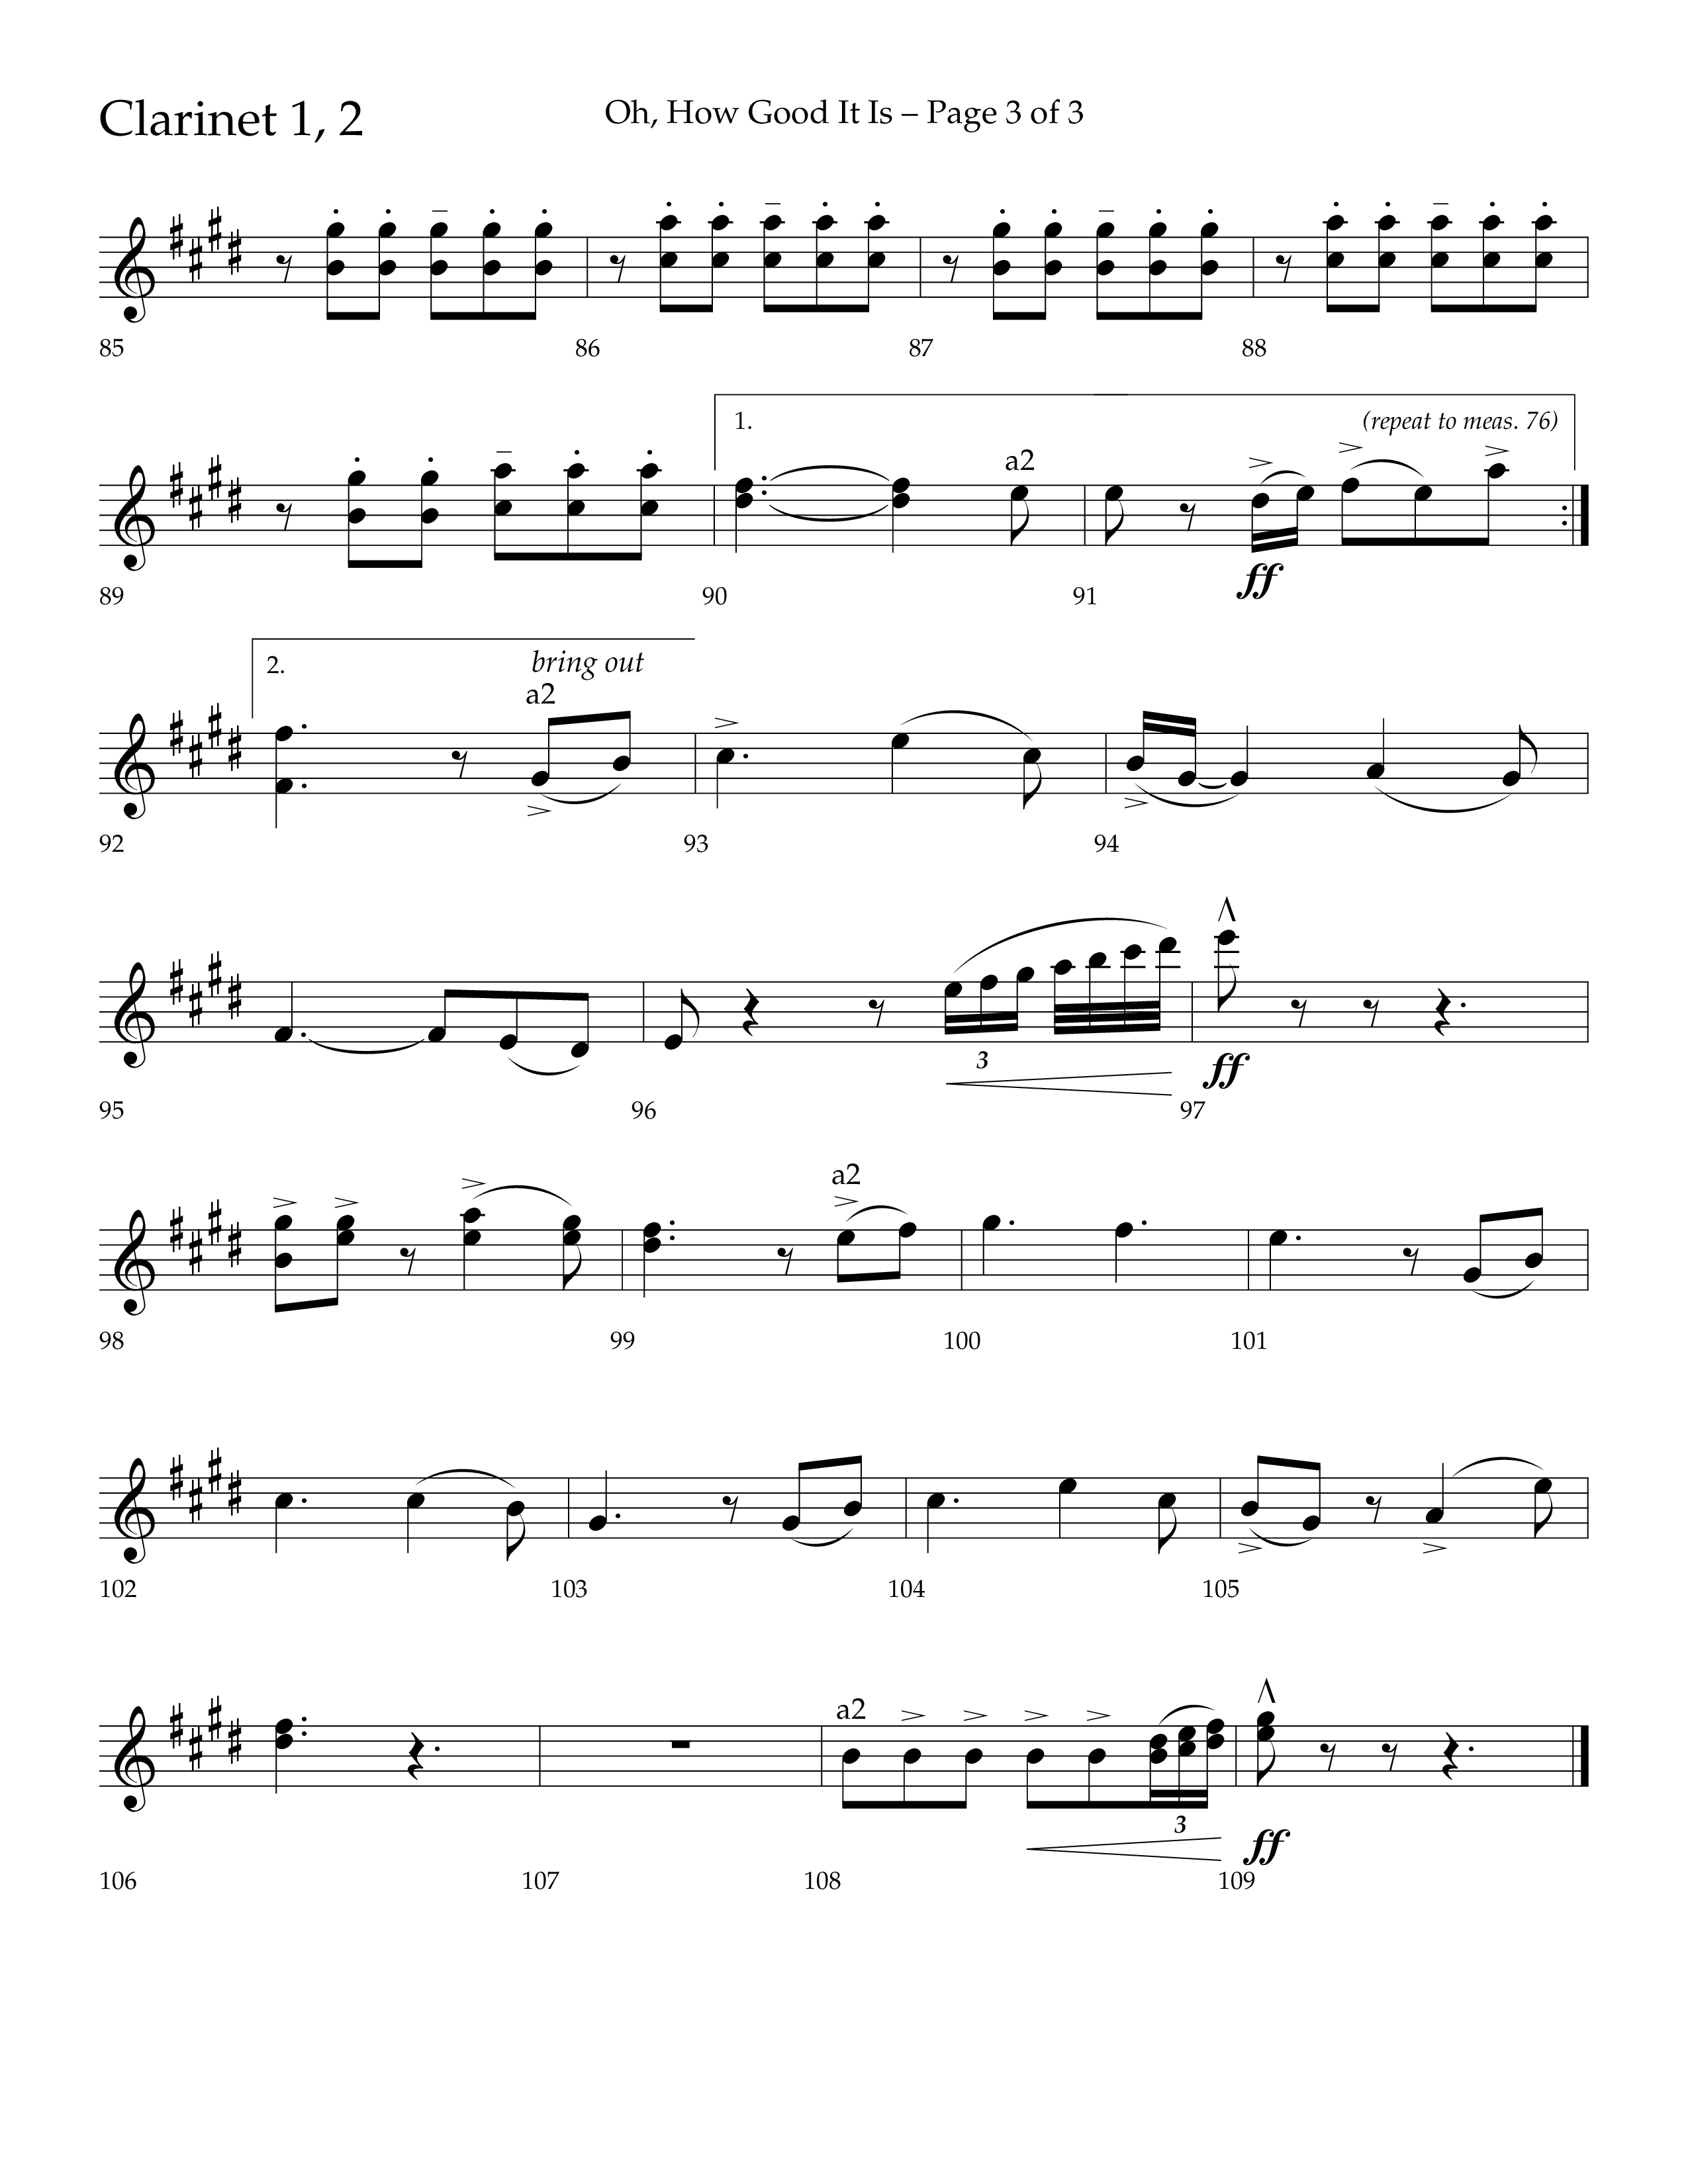 Oh How Good It Is (Choral Anthem SATB) Clarinet 1/2 (Lifeway Choral / Arr. David Hamilton)